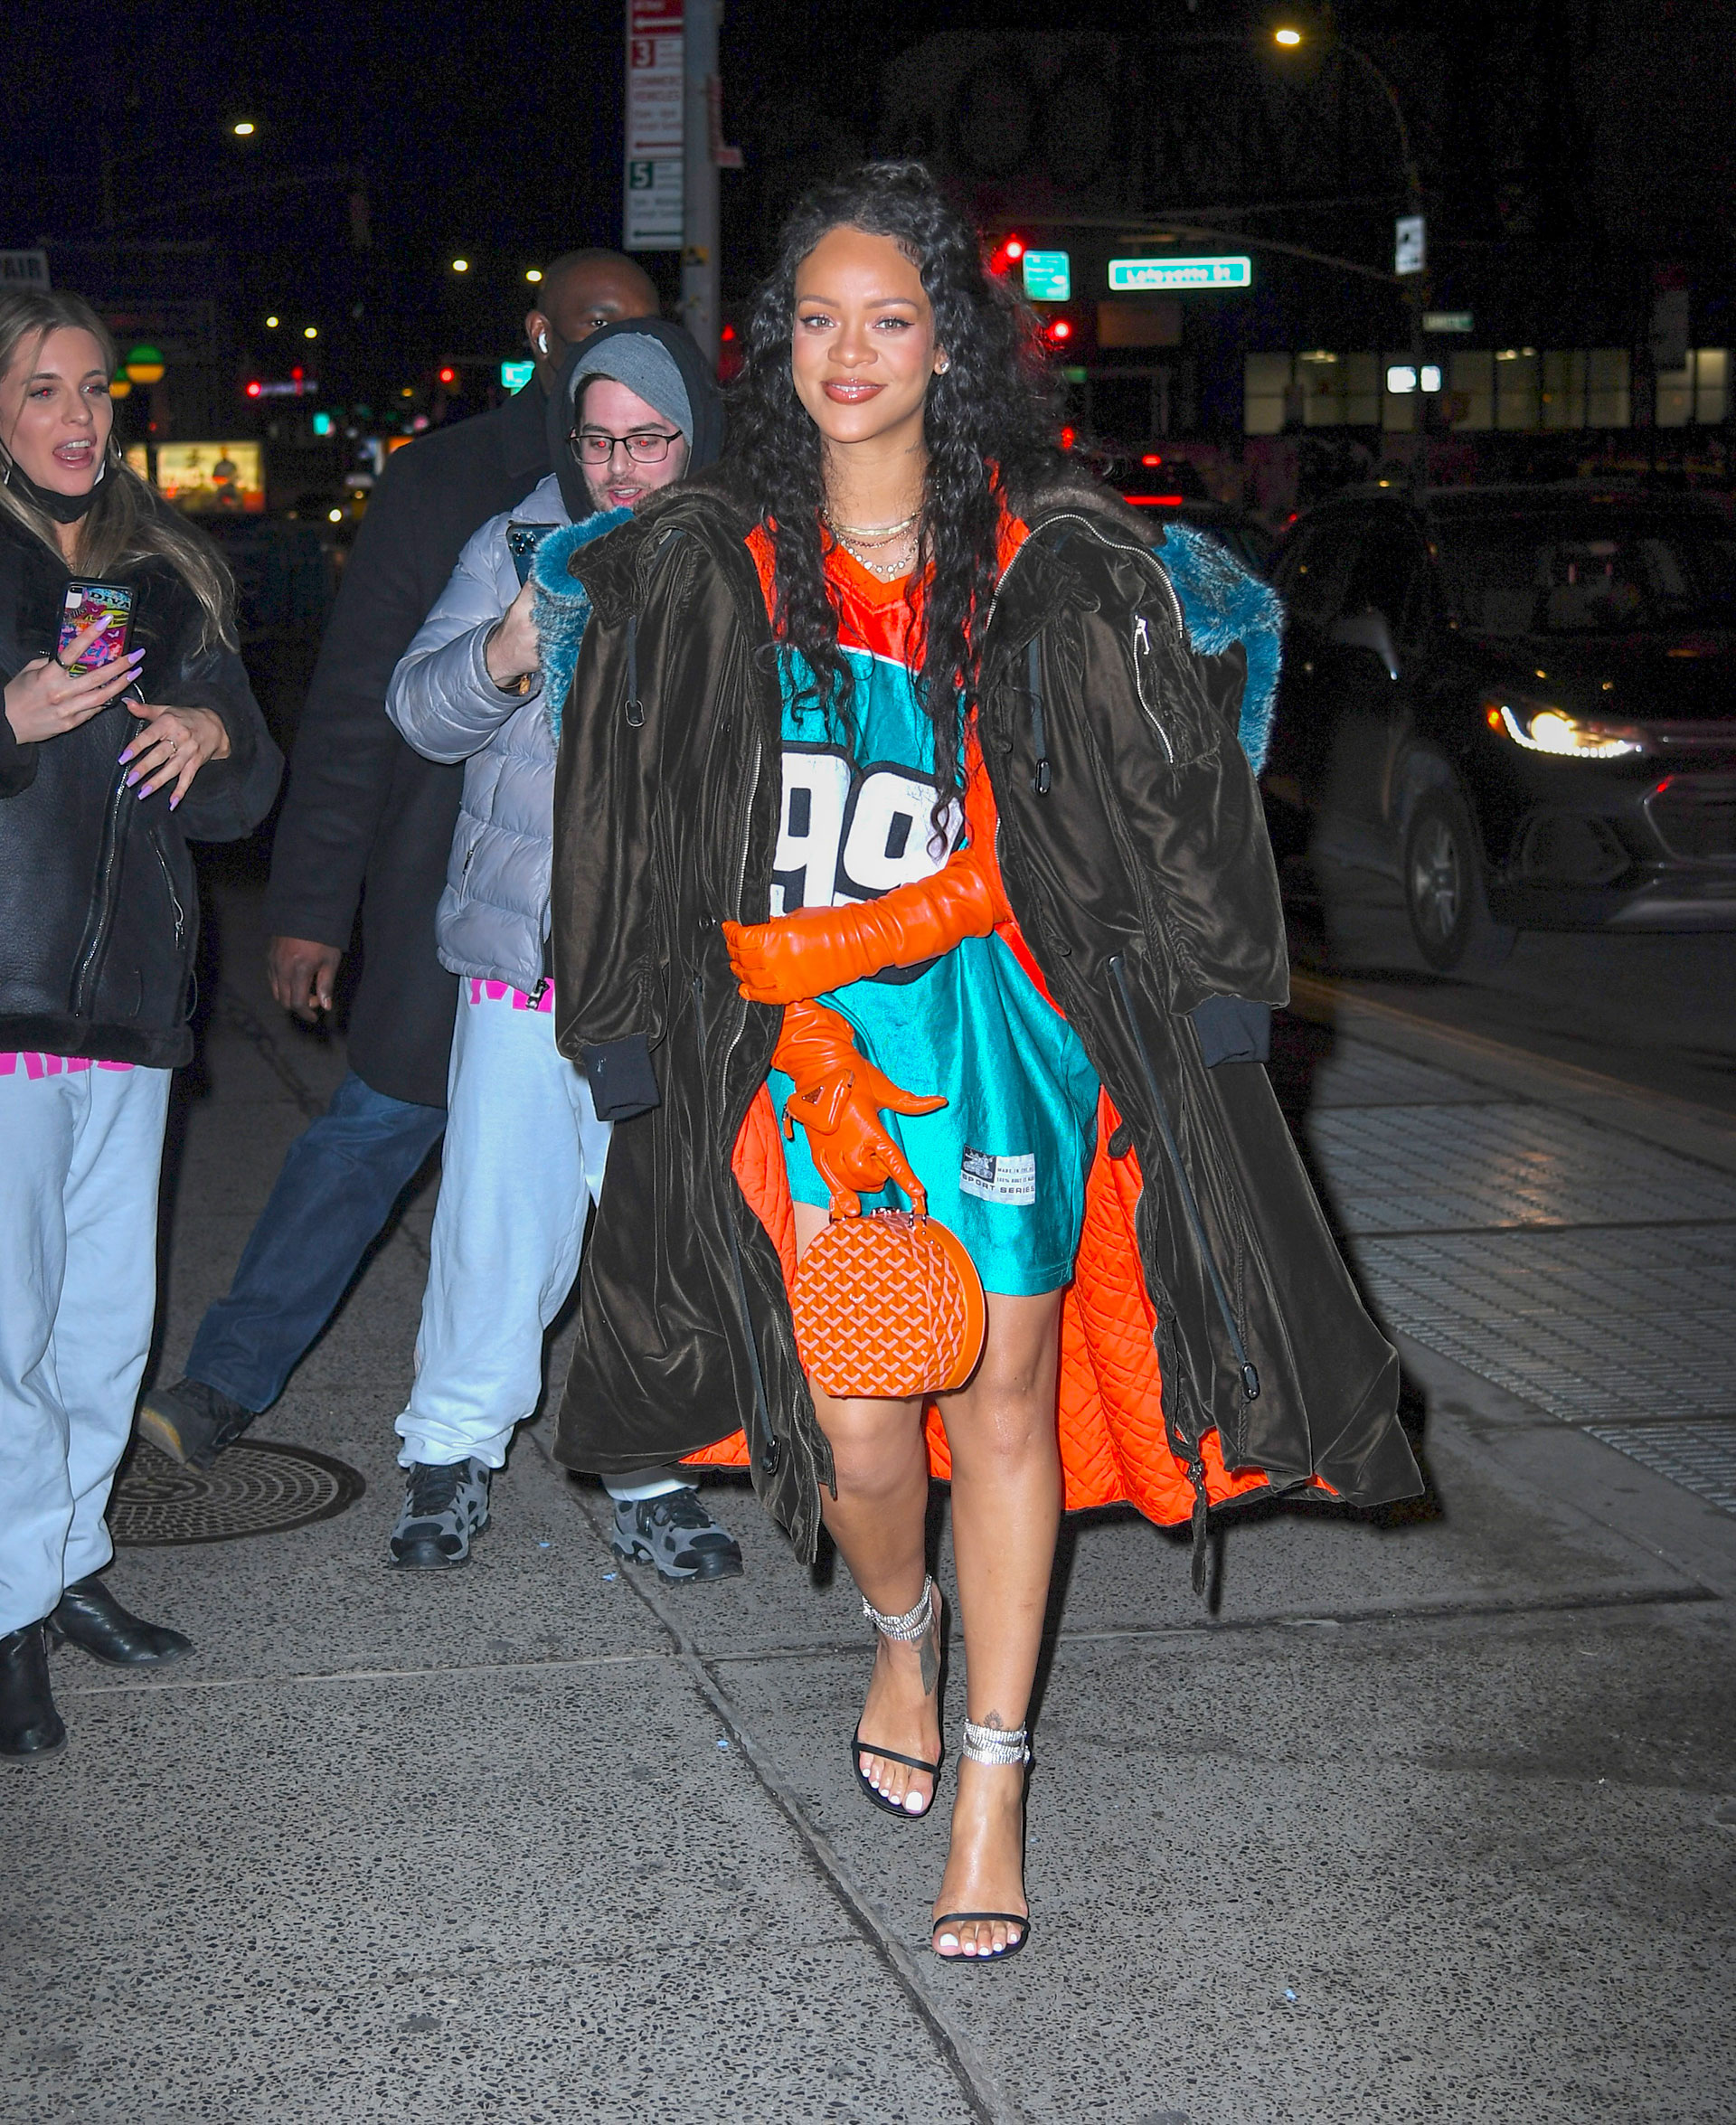 Una noche llena de planes. Rihanna fue a comer a un exclusivo restaurante de Nueva York y luego se dirigió hacia el estudio de ASAP Rocky. Para ello, lució un extravagante y colorido look que incluyó una camiseta turquesa y guantes color naranja que combinó con su cartera